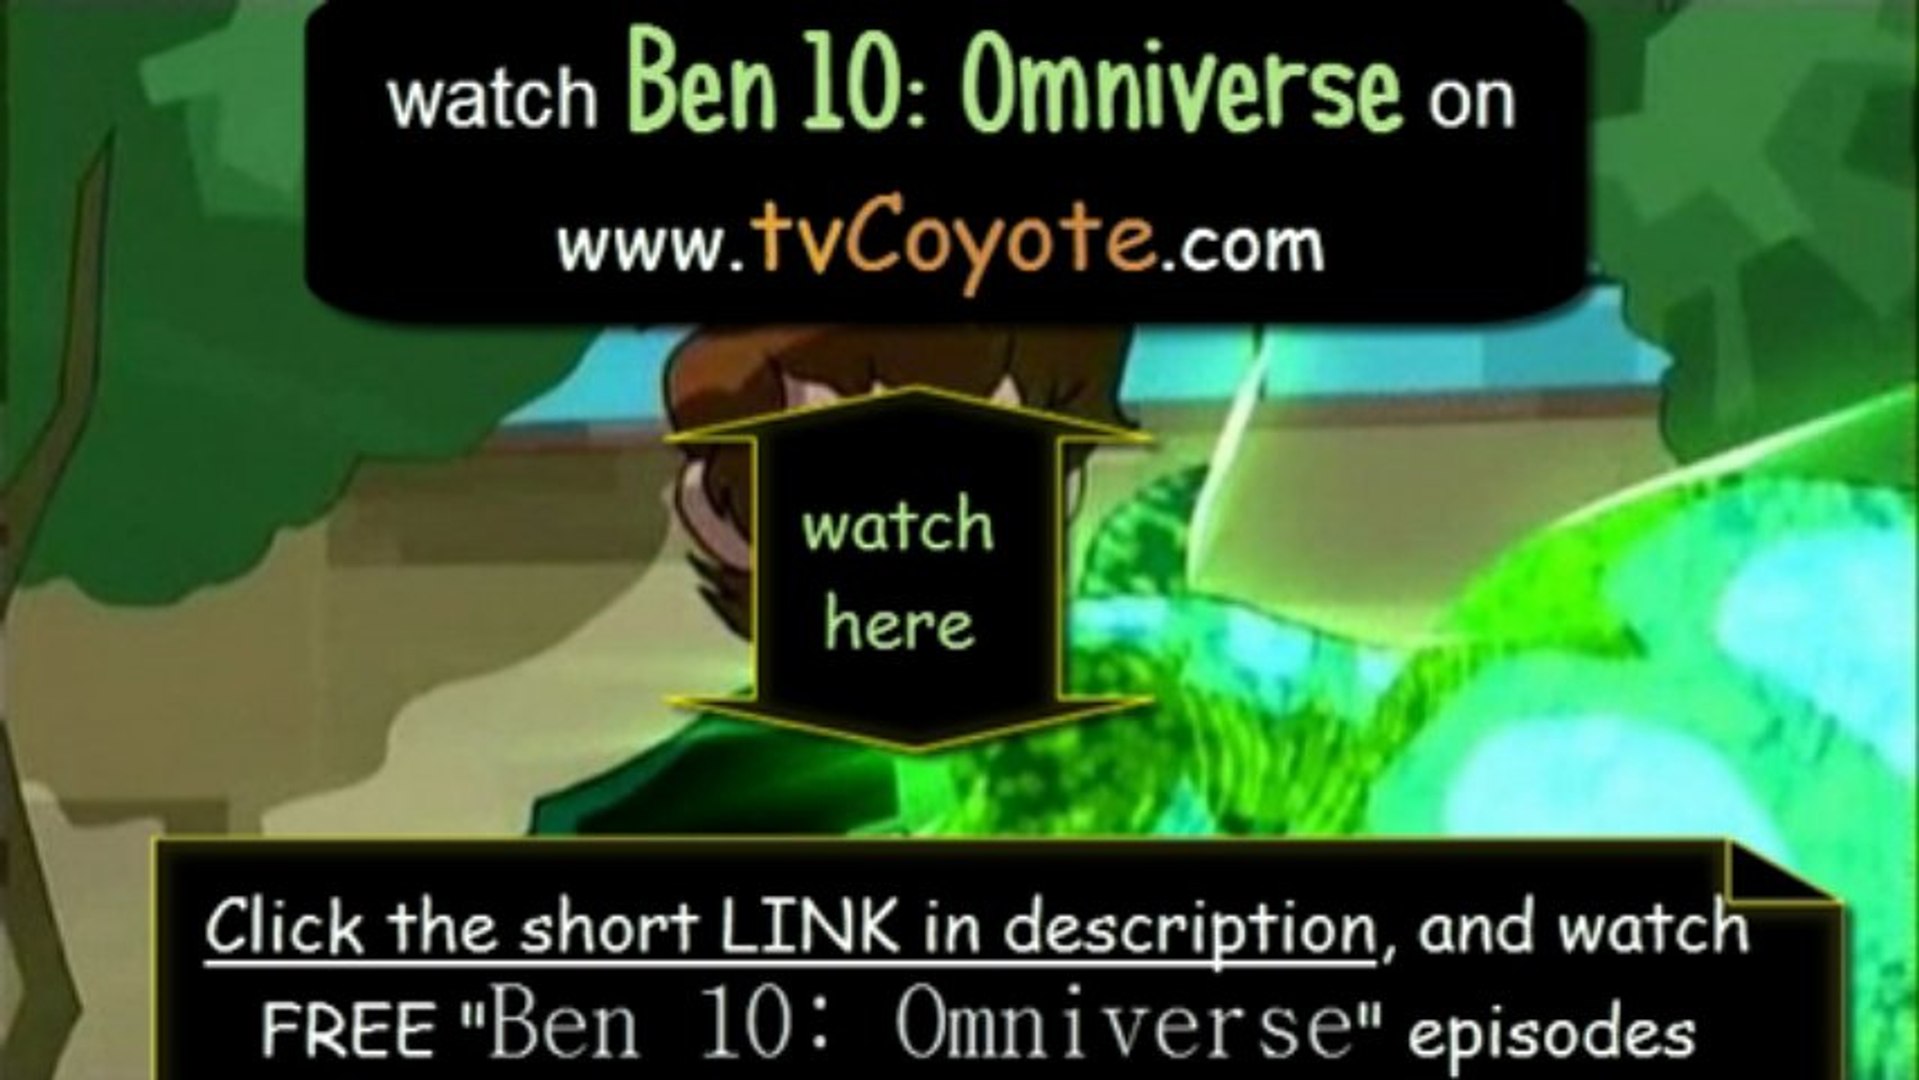 Ben 10, Watch Free Episodes